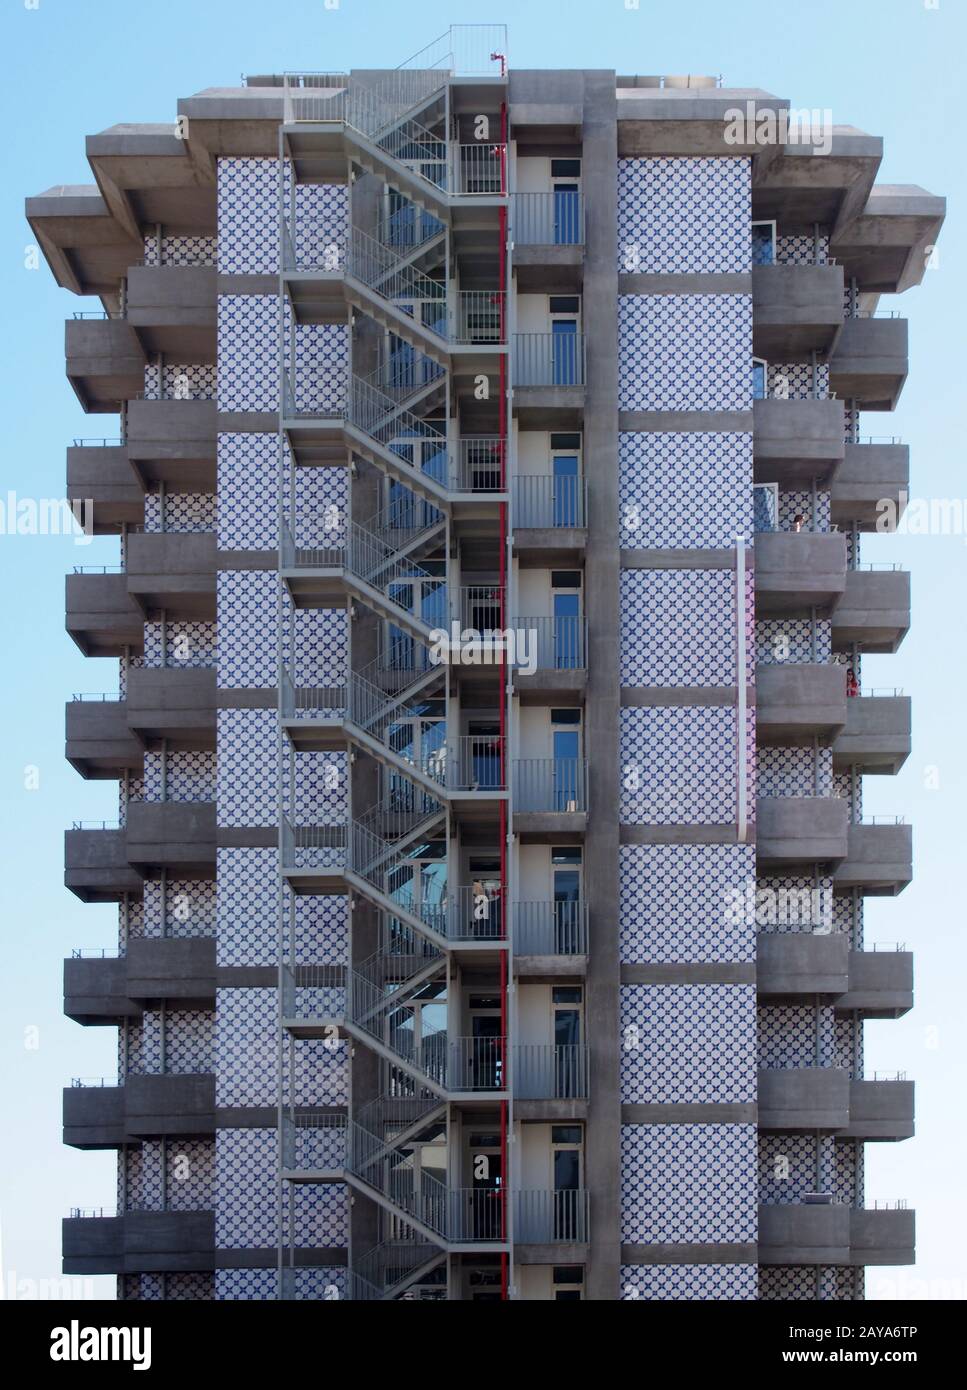 Ein alter hoher Wohnblock aus Beton mit sich wiederholenden Balkonen aus Beton und einer Außentreppe mit Metallgeländern entweichen wieder Stockfoto